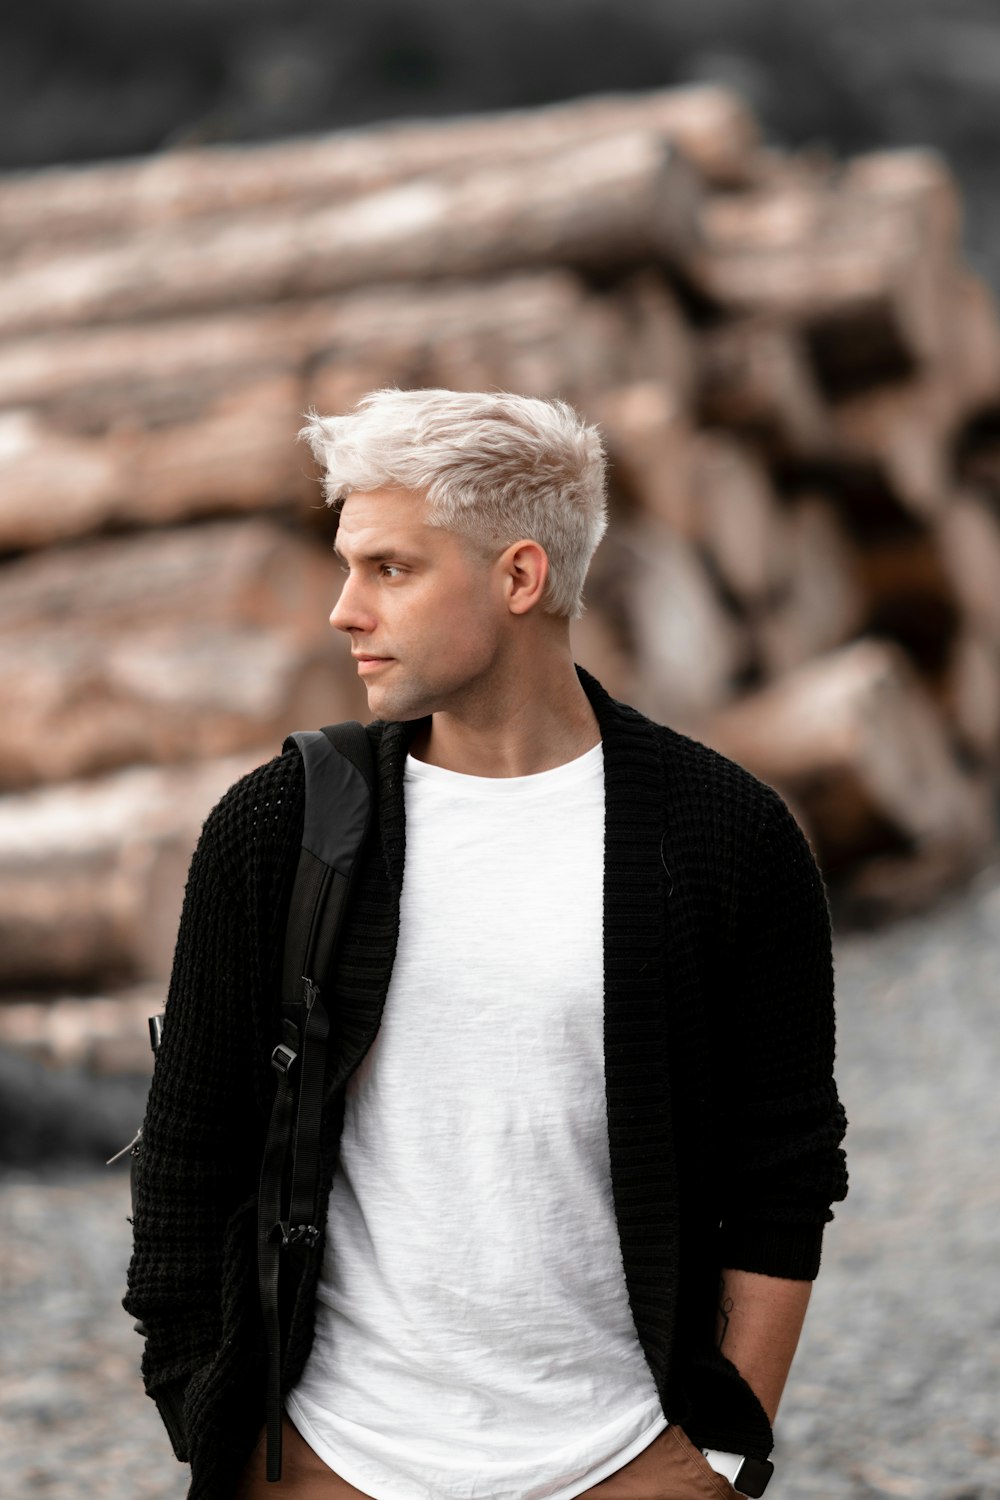 Un hombre con cabello blanco parado frente a una pila de troncos